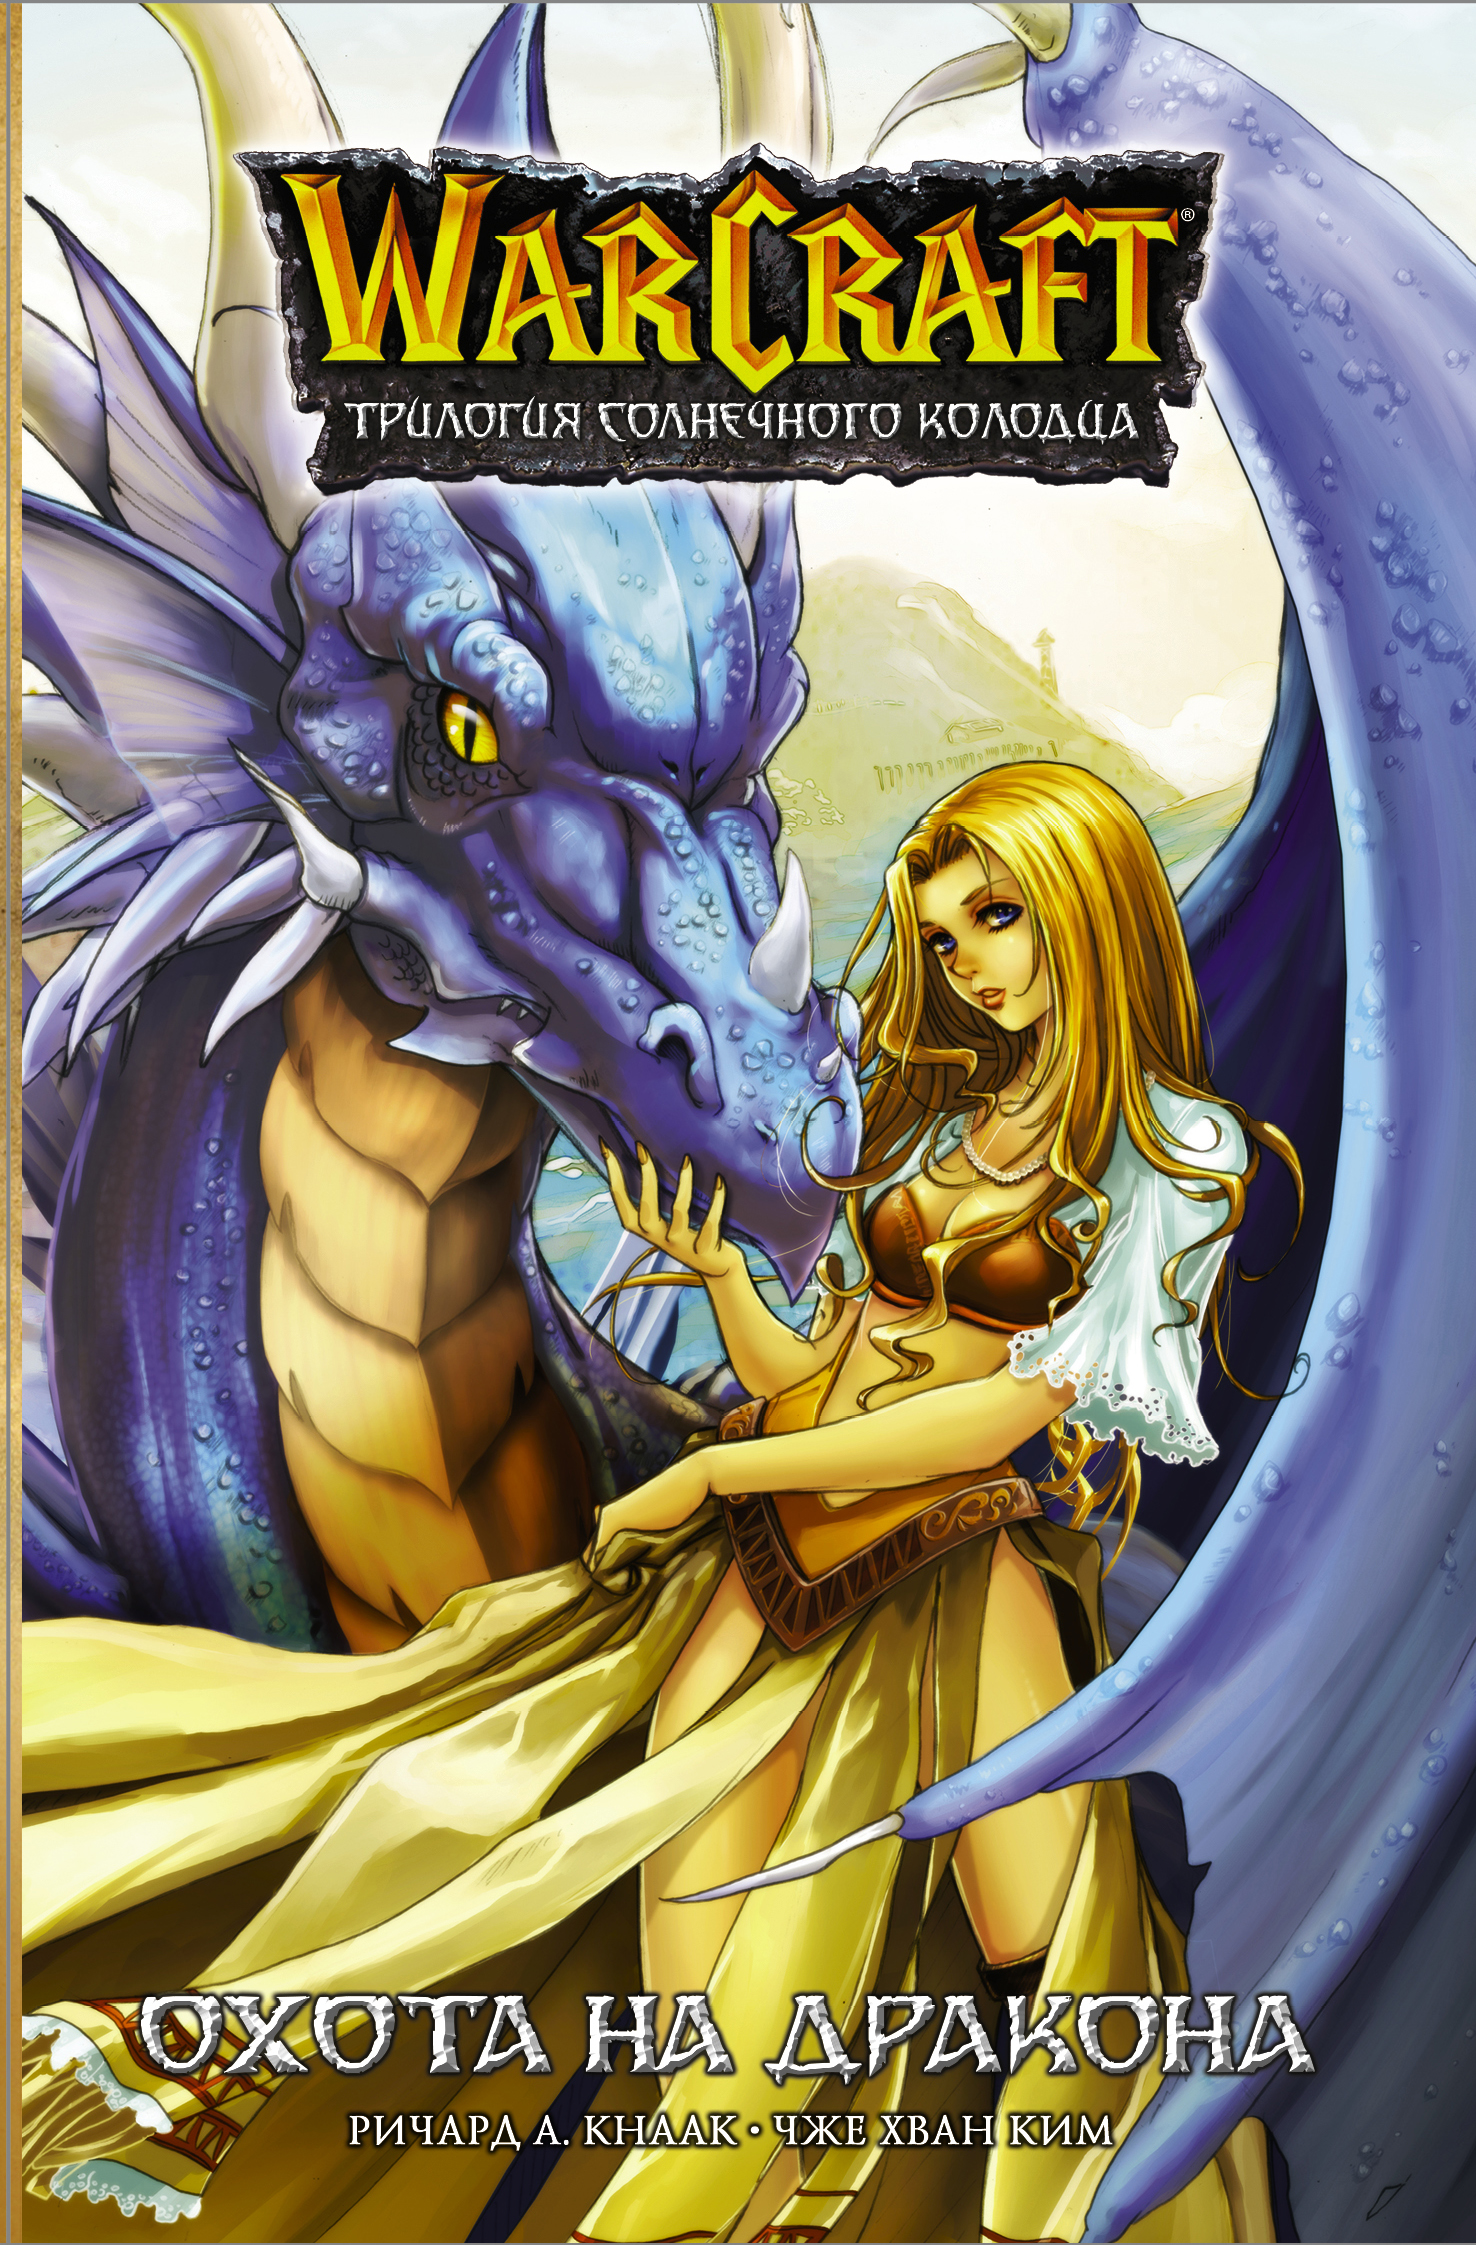 Кнаак Ричард Warcraft. Трилогия Солнечного колодца: Охота на дракона аст warcraft трилогия солнечного колодца тени во льдах